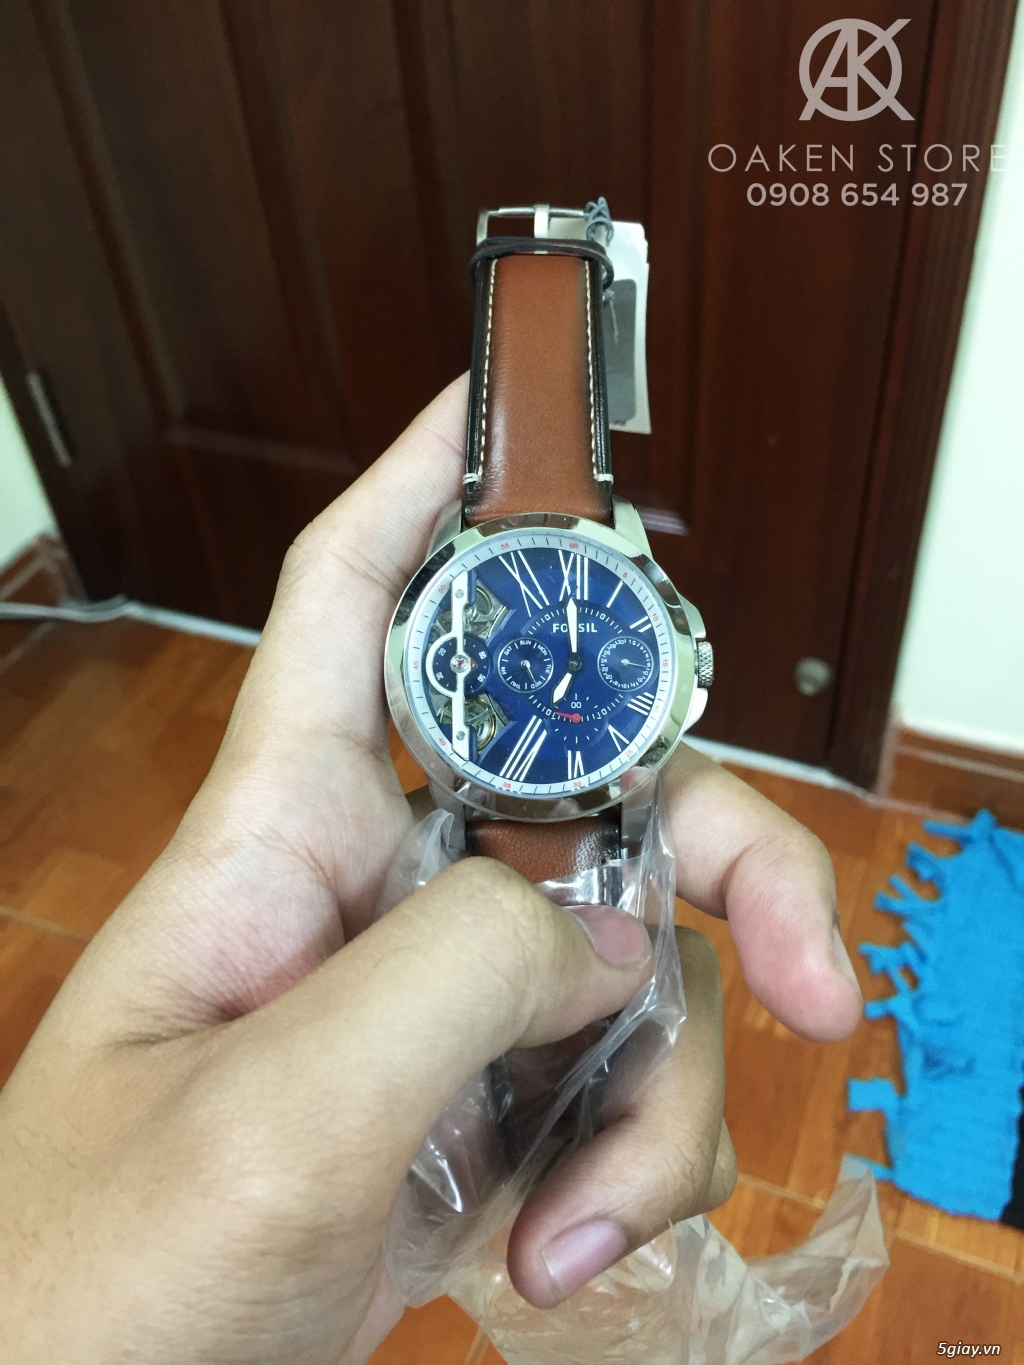 Oaken Store - Đồng hồ chính hãng xách tay giá tốt - 8